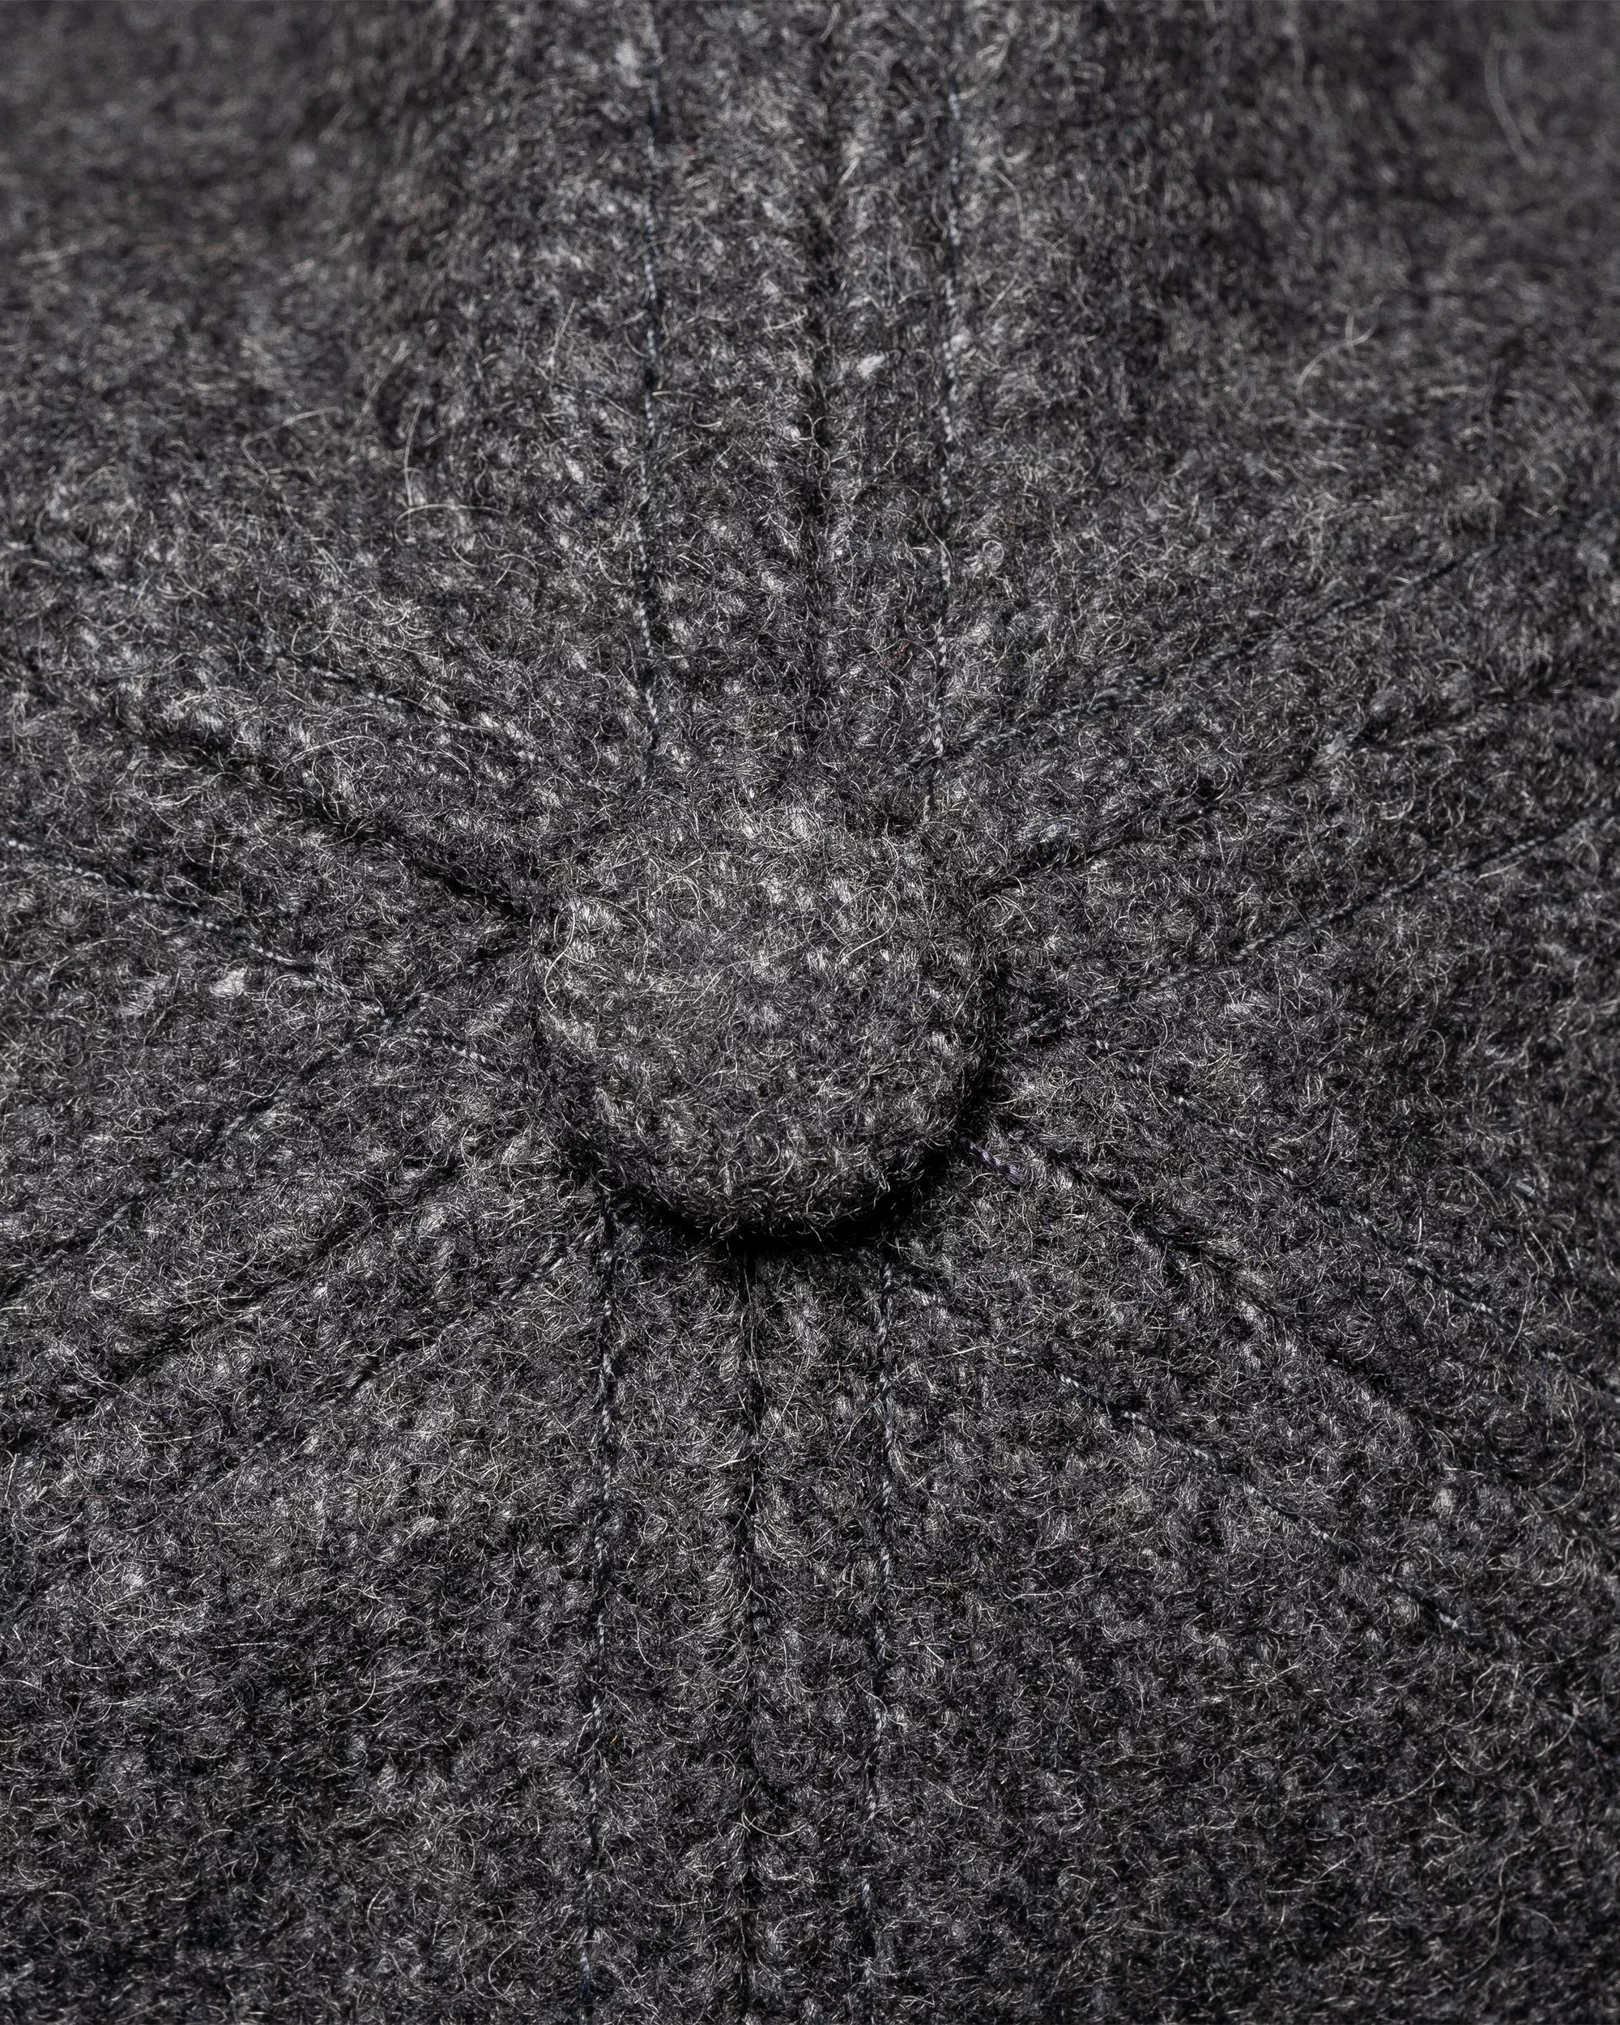 Eton - gray wool cap